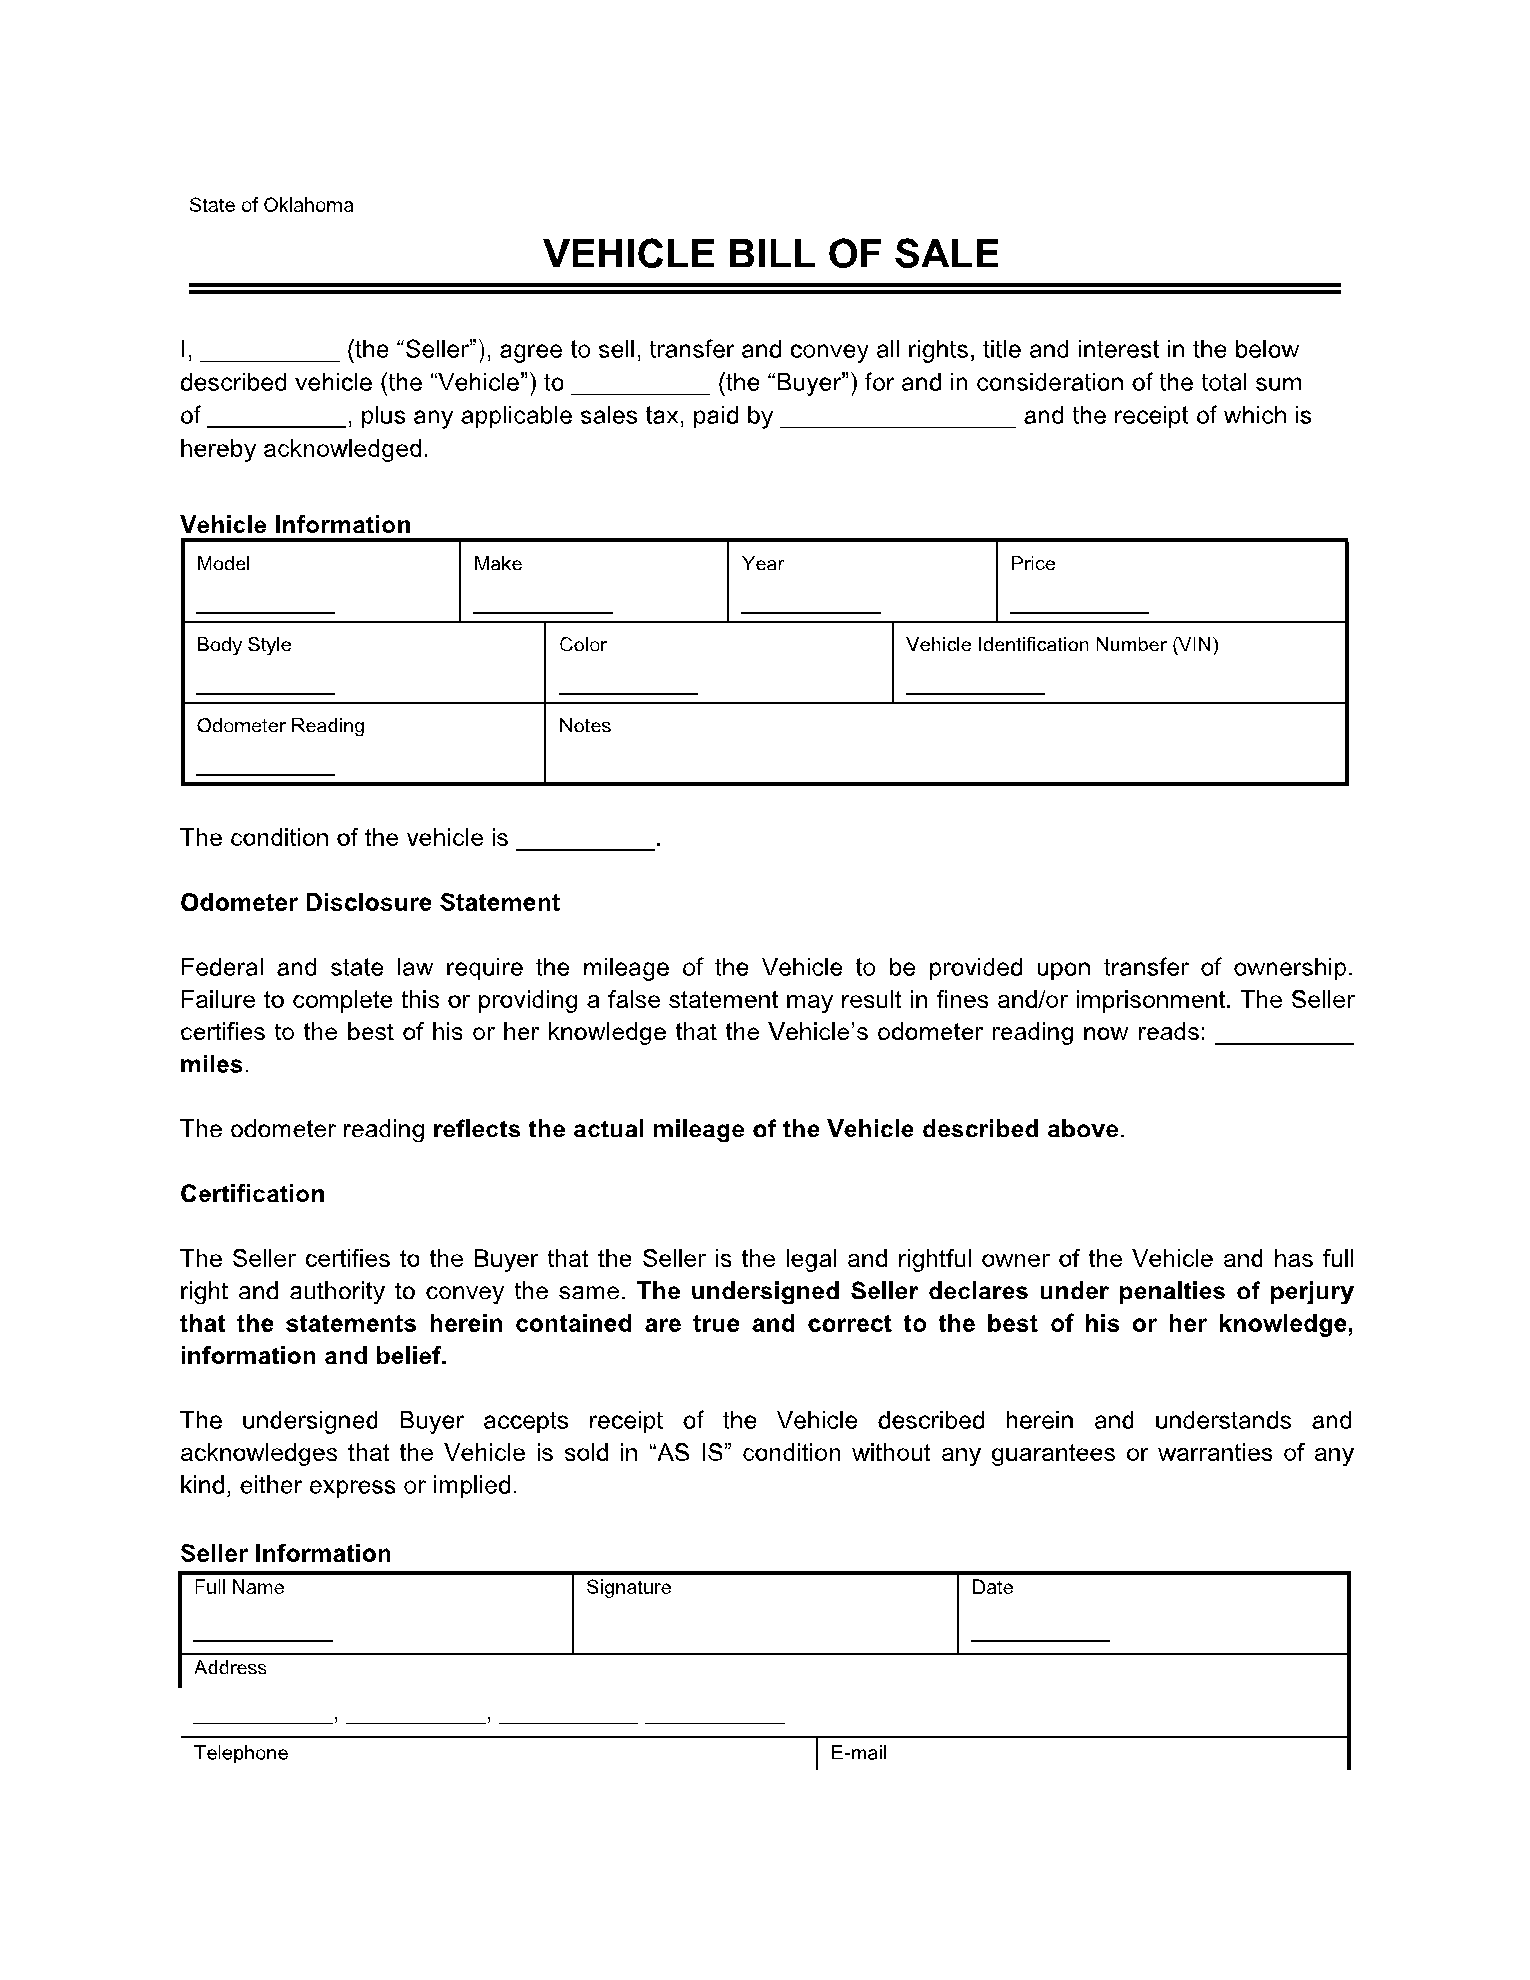 Oklahoma Vehicle Bill of Sale